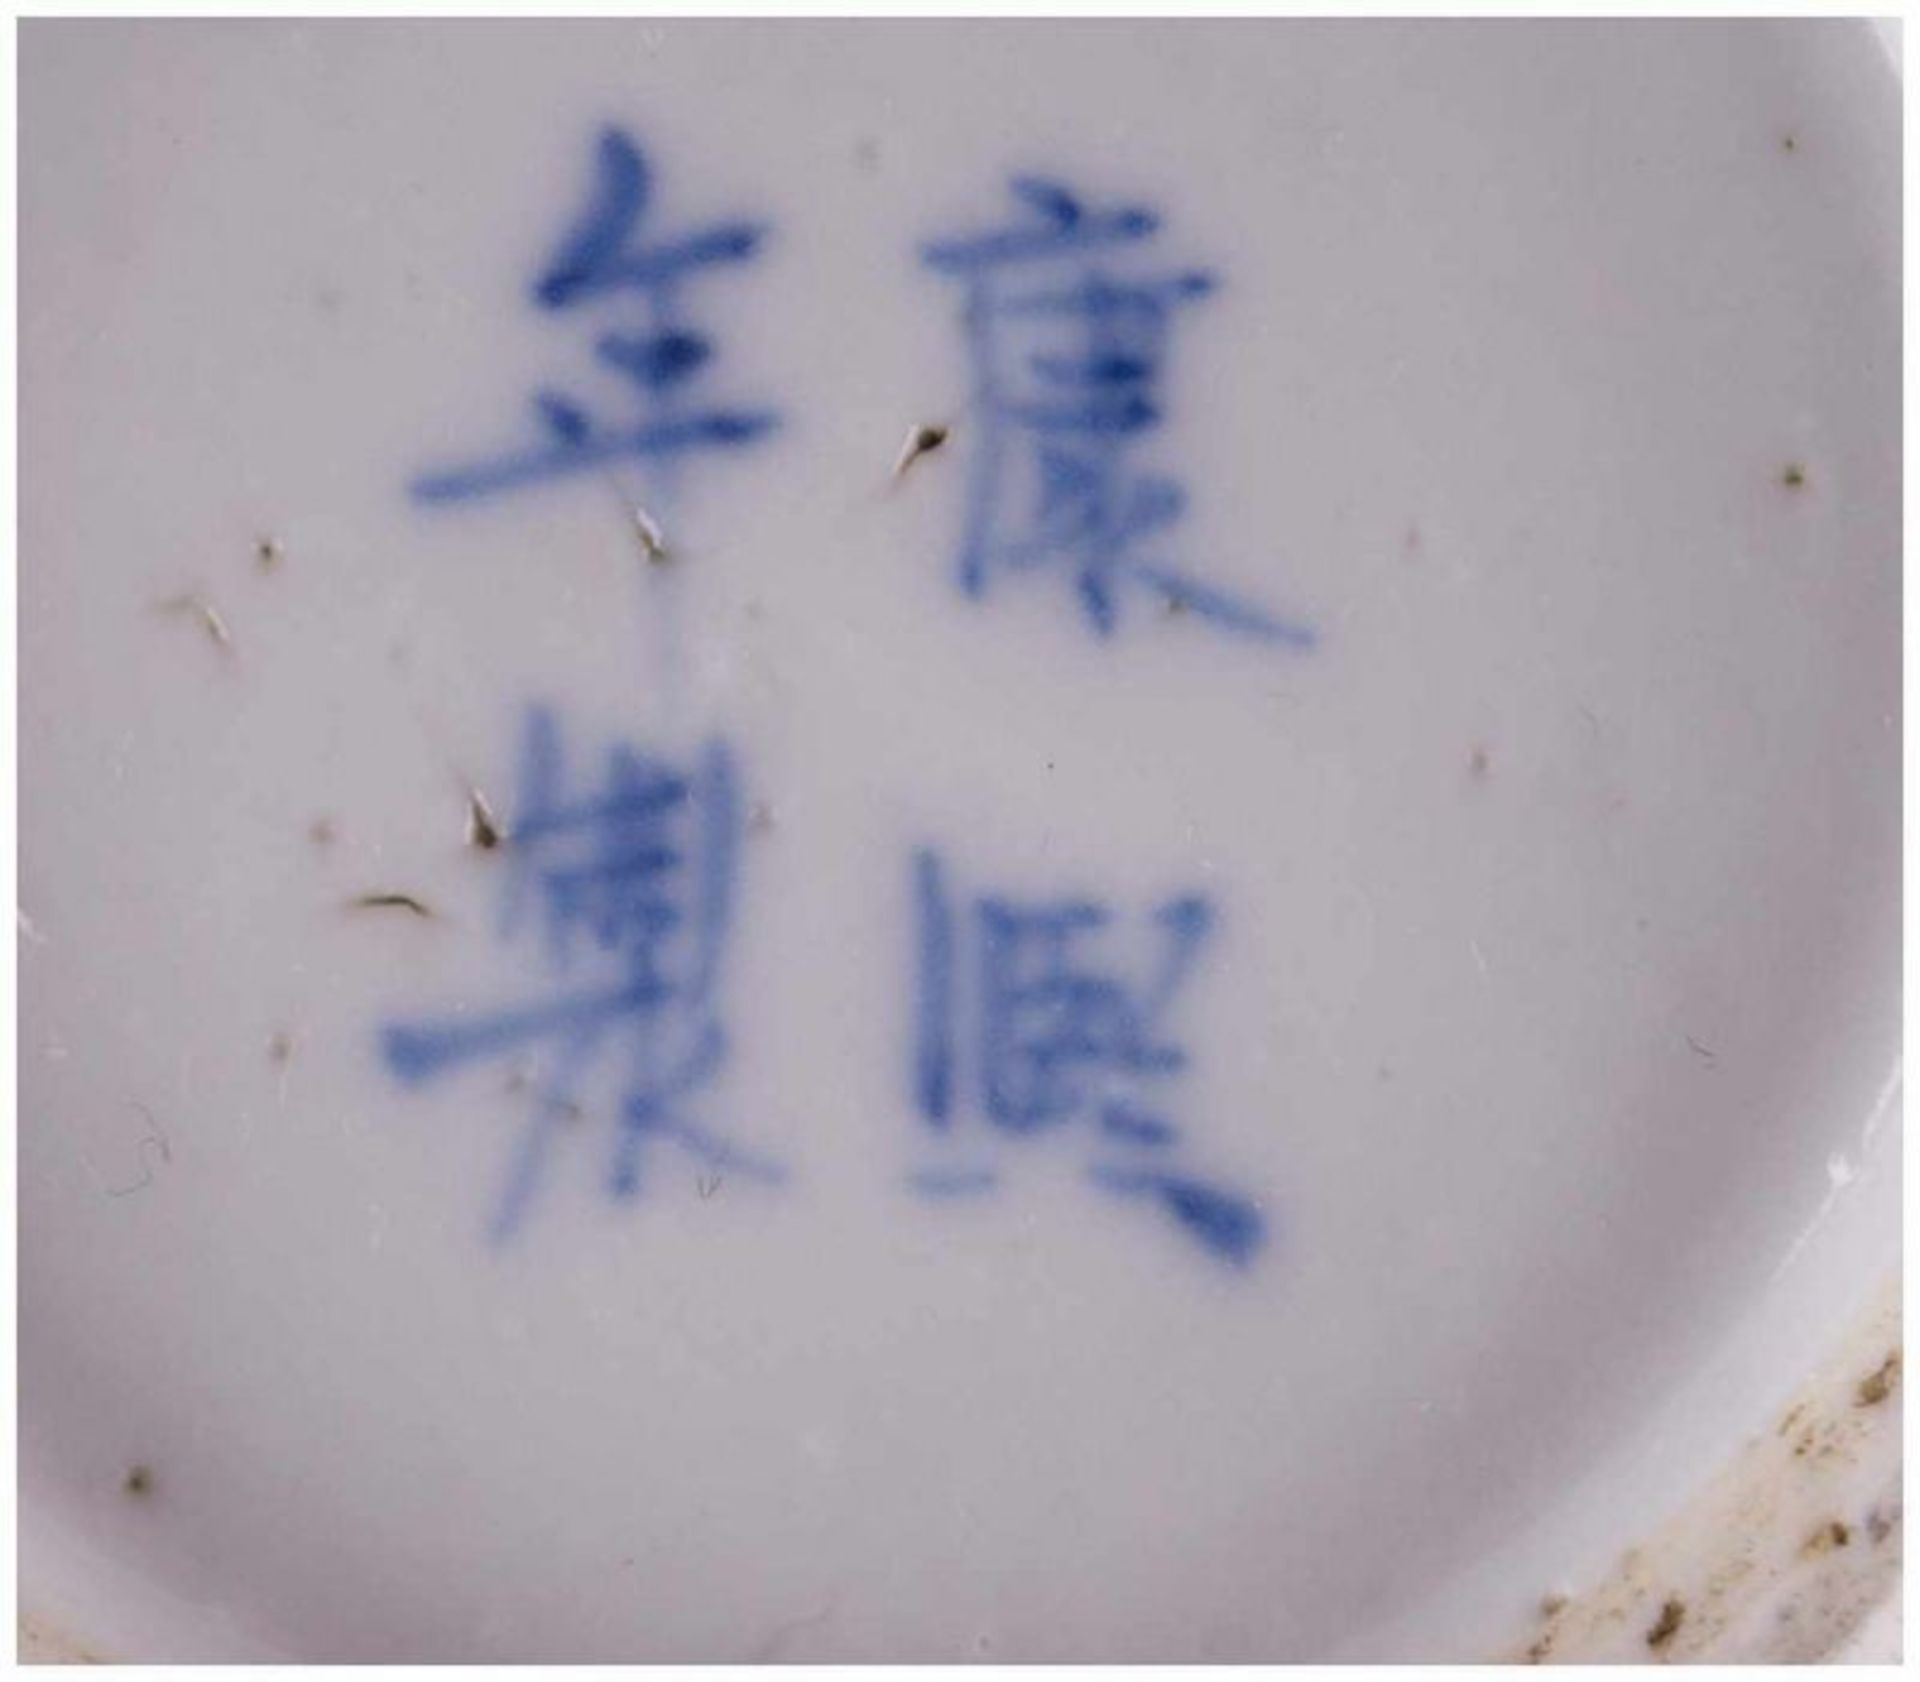 Stangenvase China 19./20. Jhd. / Vase, China 19th/20th century - Blau-weiß Malerei [...] - Bild 6 aus 10